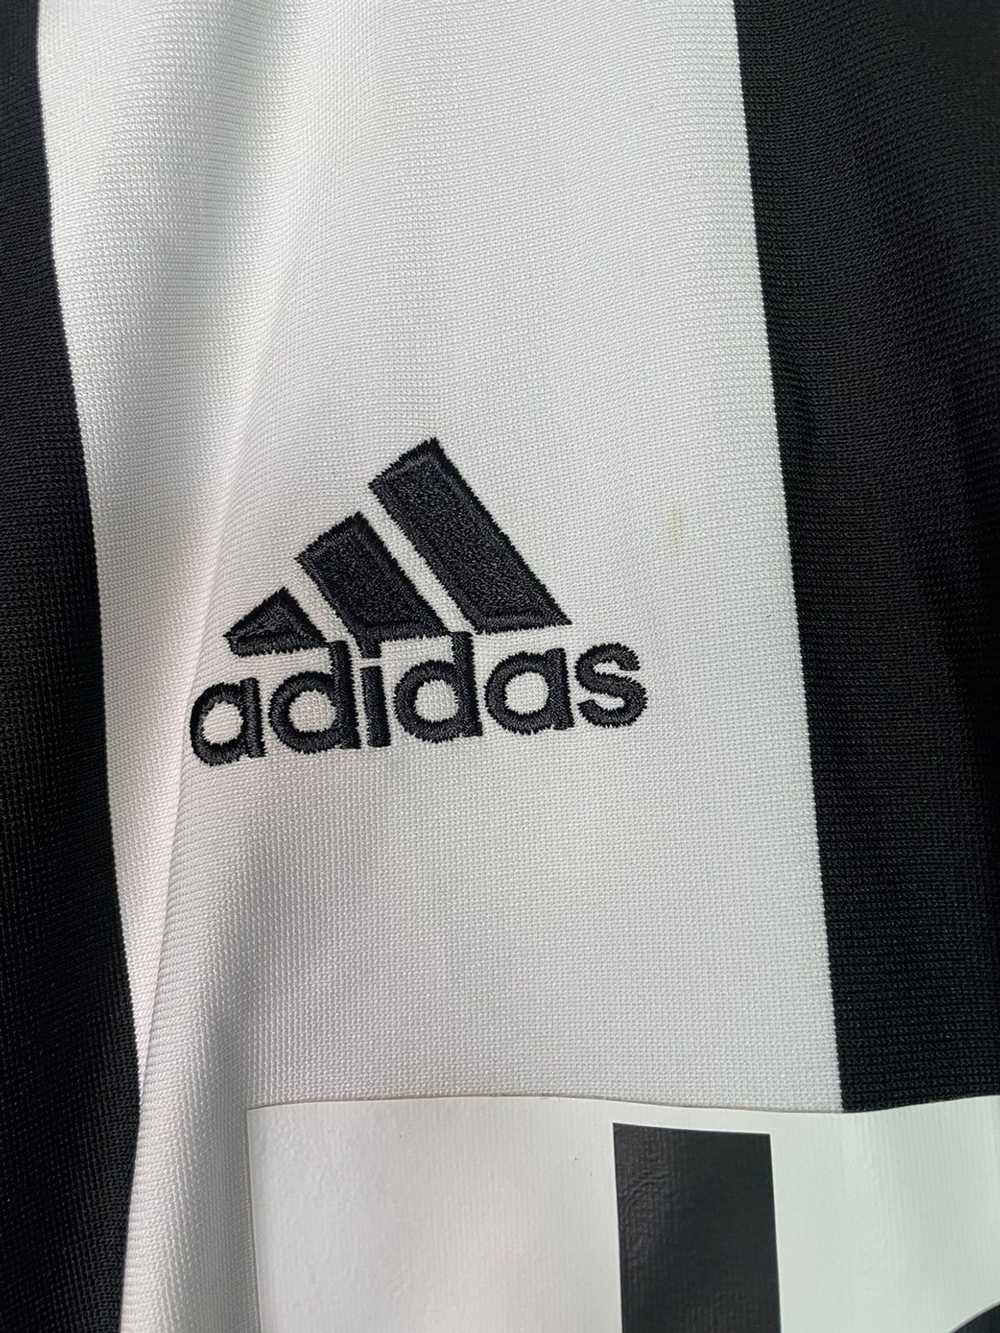 Adidas Juventus 15/ 16 kit jersey striped - image 3